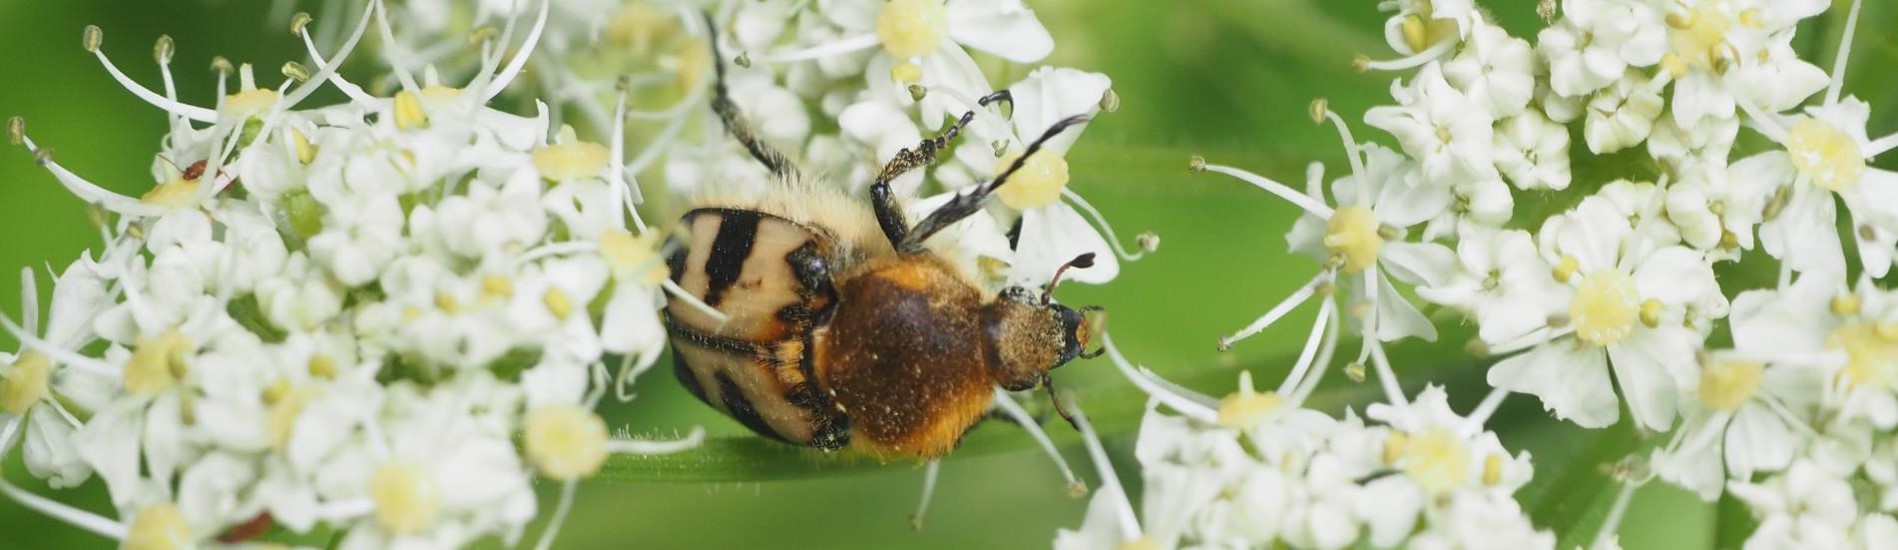 Beetle on flowers